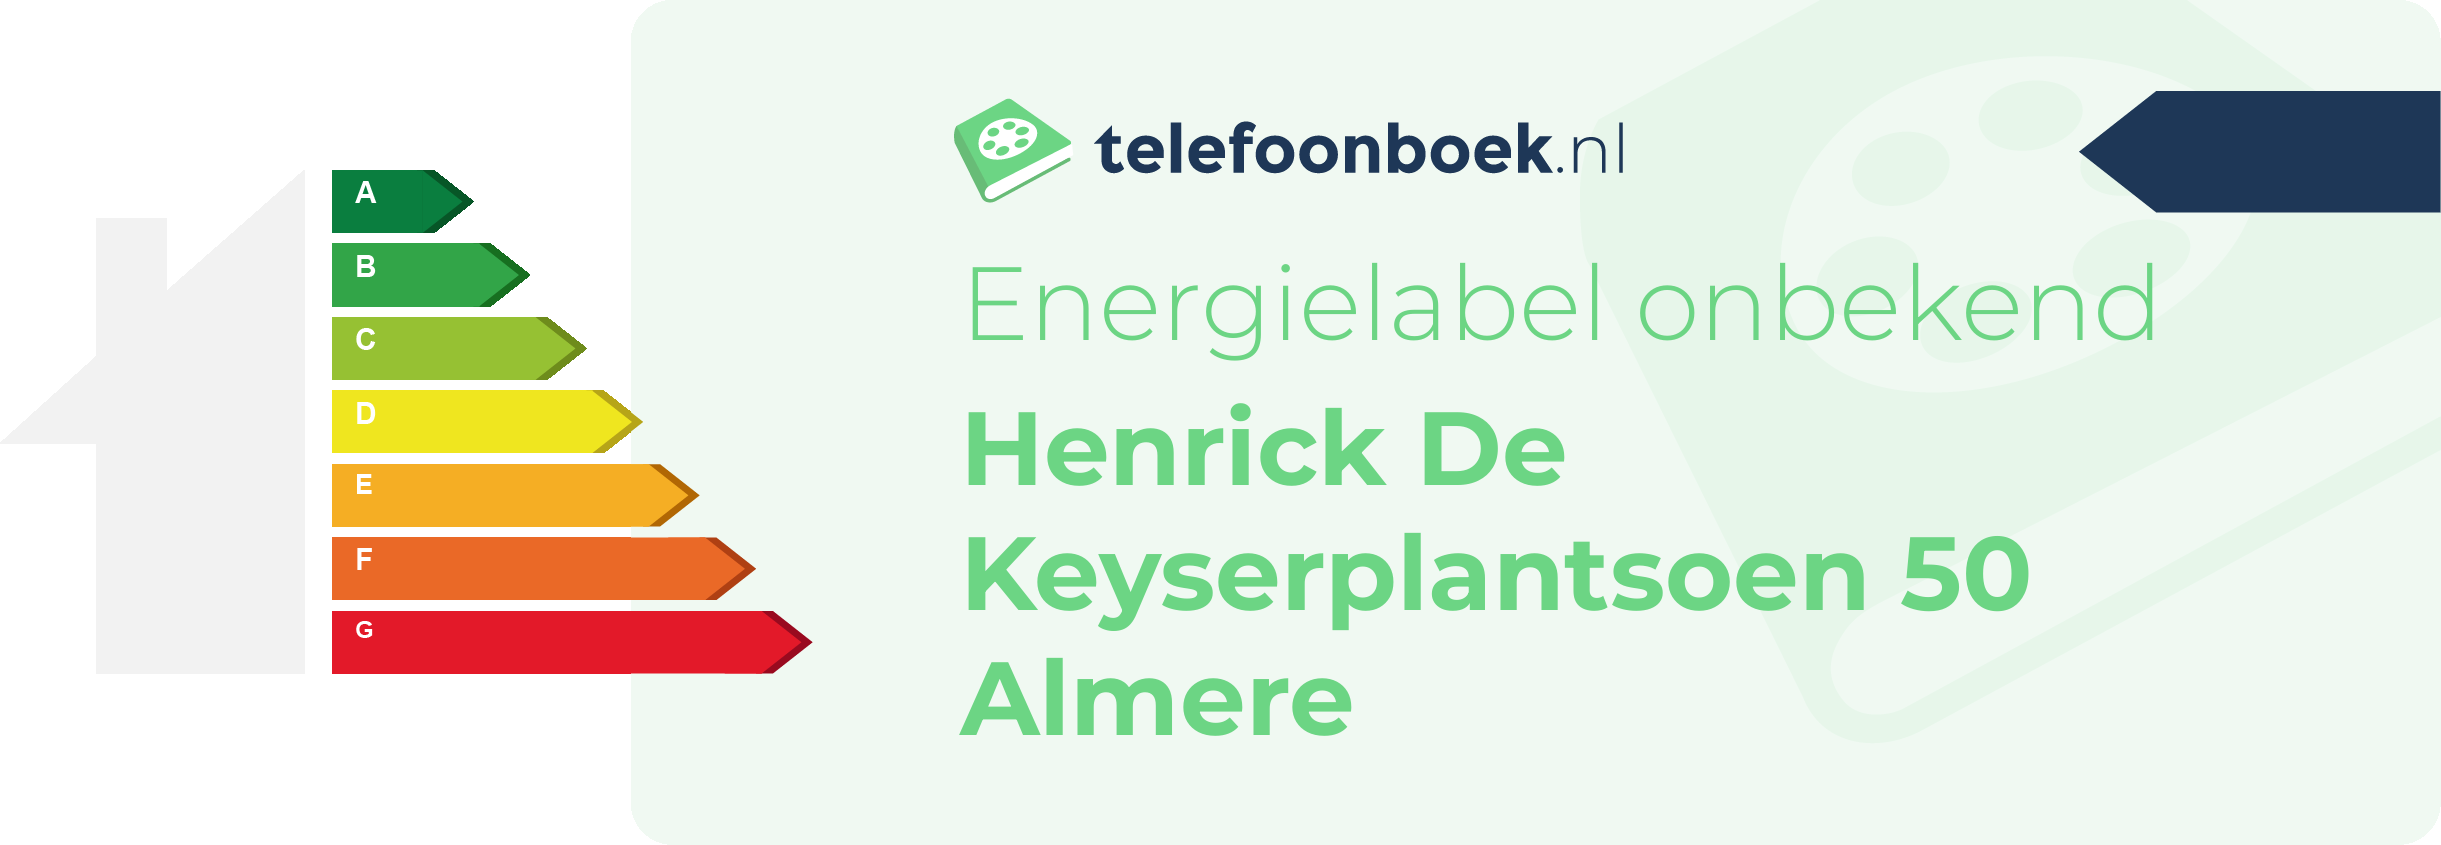 Energielabel Henrick De Keyserplantsoen 50 Almere